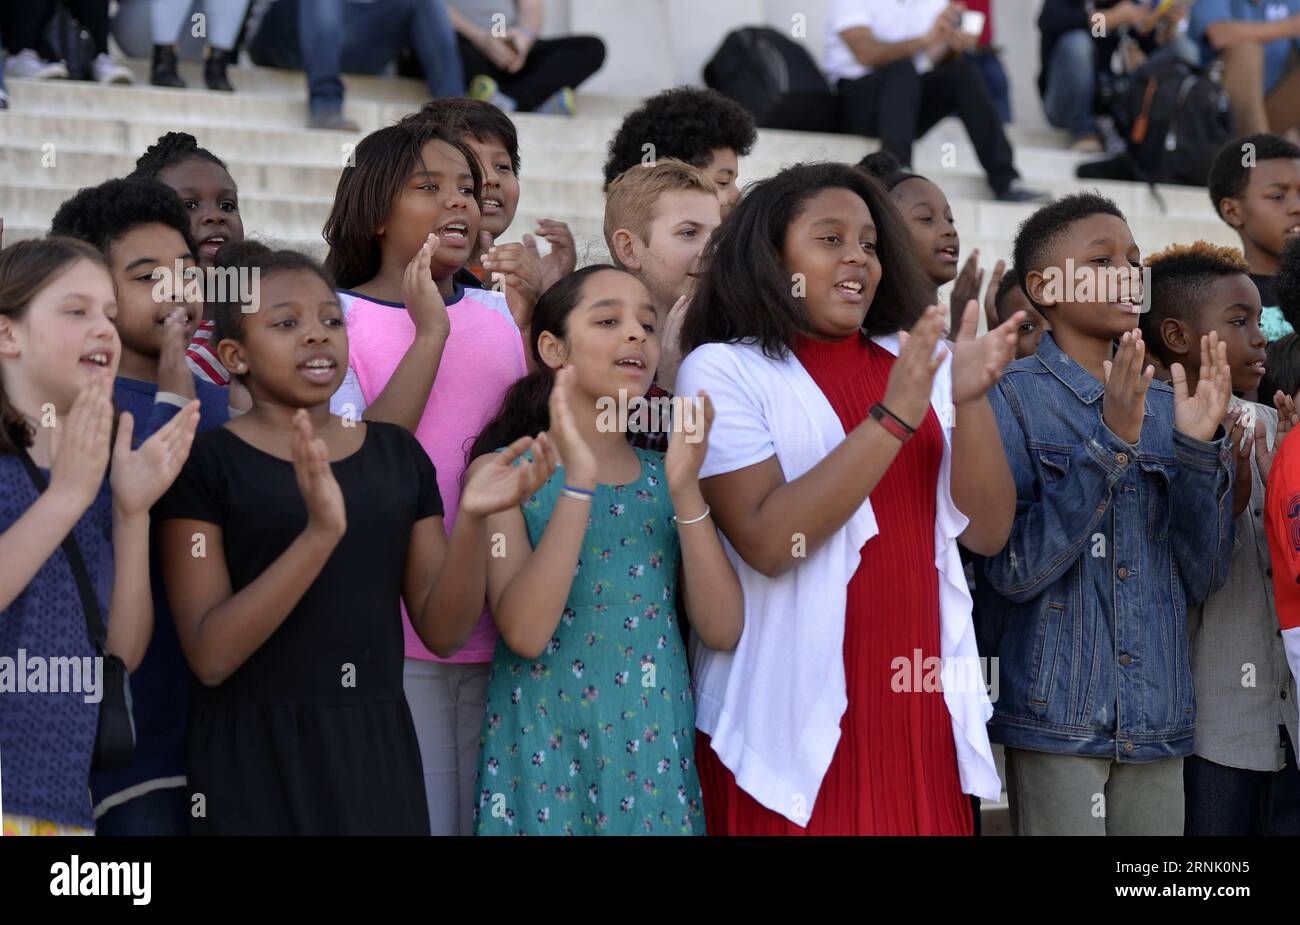 (170224) -- WASHINGTON, 24 febbraio 2017 -- gli studenti della Watkins Elementary School partecipano alla tredicesima lettura annuale di Martin Luther King S i Have a Dream Speech al Lincoln Memorial di Washington D.C., capitale degli Stati Uniti, il 24 febbraio 2017 per commemorare il leader dei diritti civili. U.S.-WASHINGTON D.C.-MARTIN LUTHER KING-COMMEMORAZIONE BaoxDandan PUBLICATIONxNOTxINxCHN Washington 24 febbraio 2017 studenti della Watkins Elementary School partecipano alla 13a lettura annuale di Martin Luther King S i Have a Dream Speech Event AL Lincoln Memorial di Washington DC capitale degli Stati Uniti Foto Stock